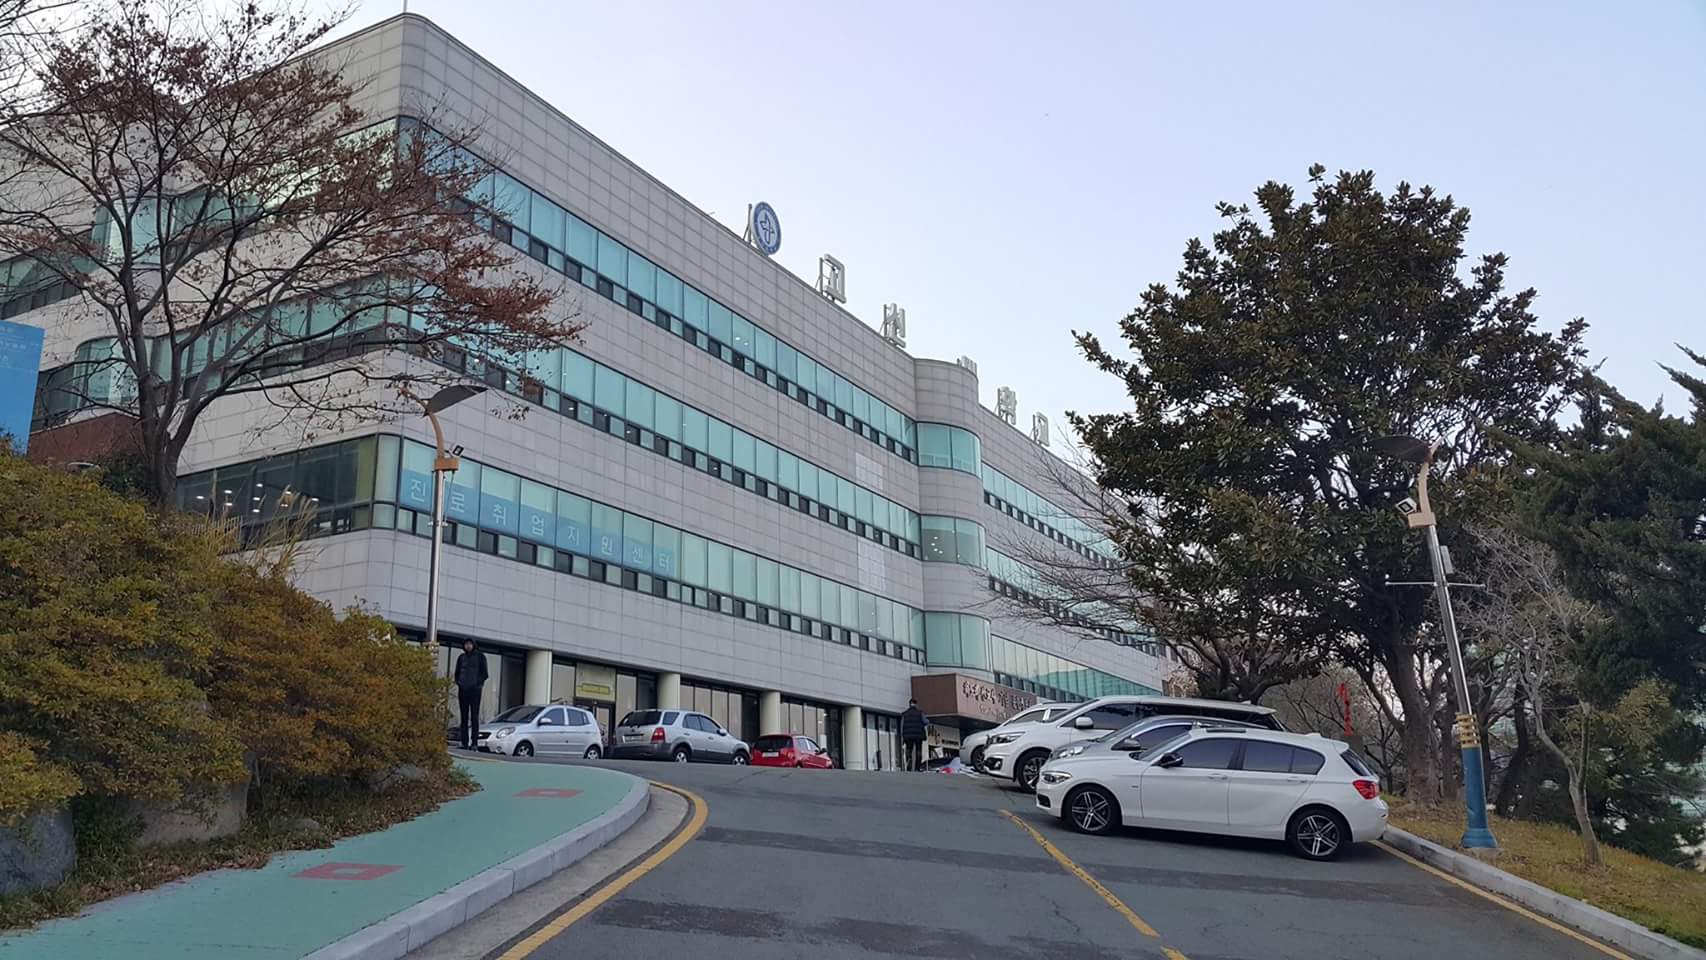 Đại học Kosin – Trường top 1% tại Busan - Tư vấn Du học Quốc tế - Đào tạo ngoại ngữ IDCedu